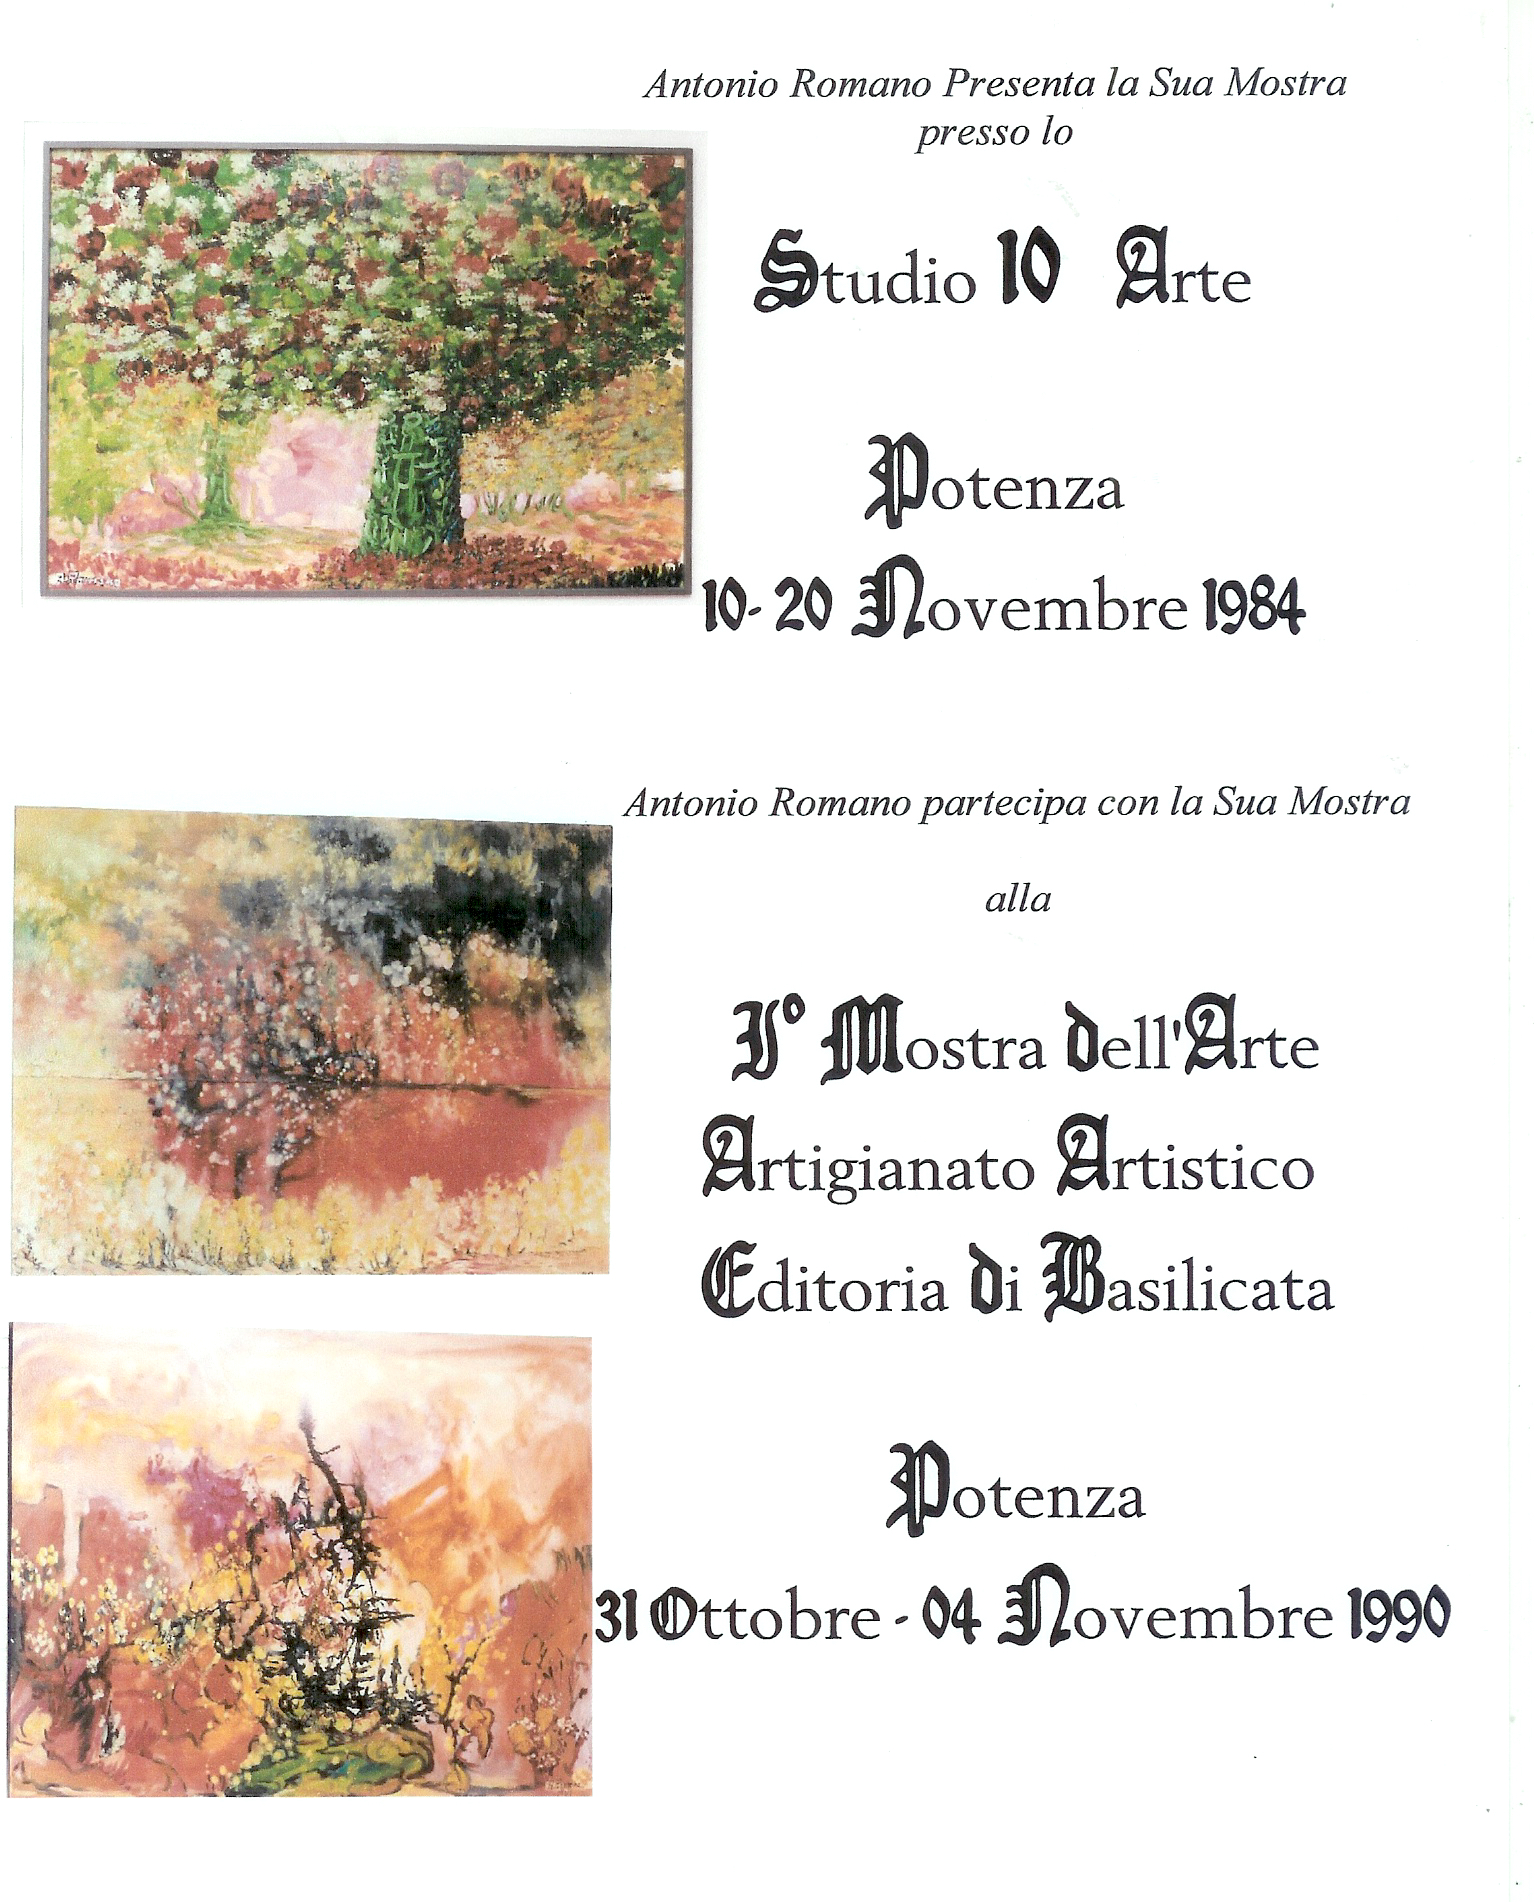 Mostra Studio 10 Arte e I° Mostra dell'Arte, Artigianato Artistico - Editoria di Basilicata a Potenza